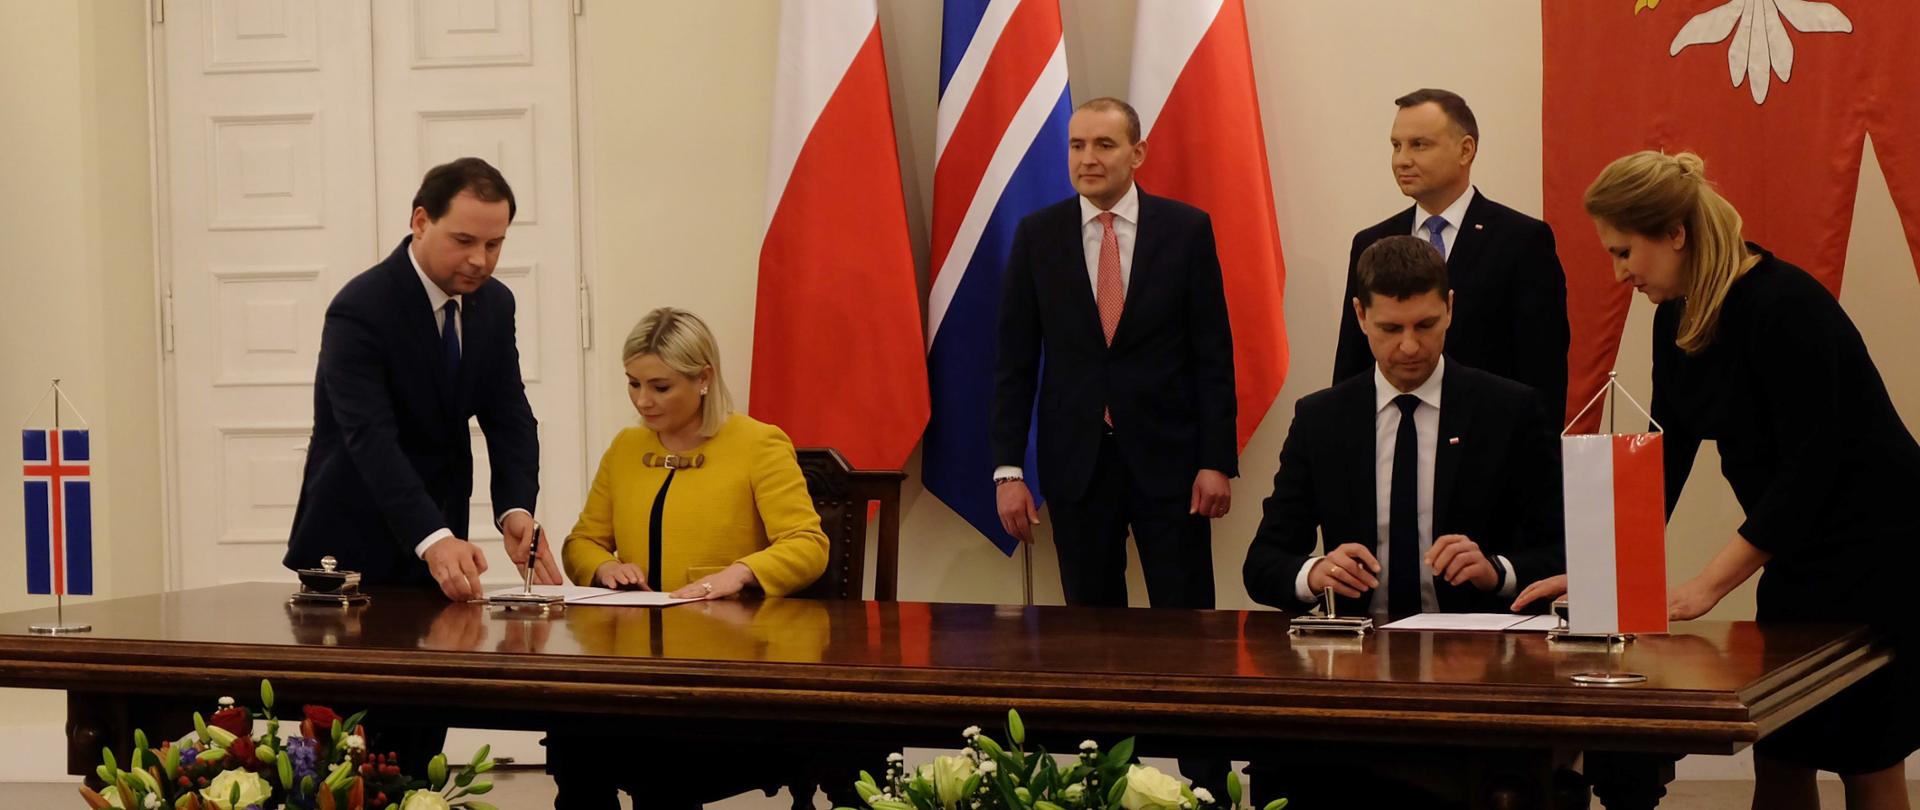 Polski minister edukacji wspólnie z islandzką minister edukacji podpisują deklarację. Za nimi stoją prezydenci obu krajów. W tle flagi Polski i Islandii. 